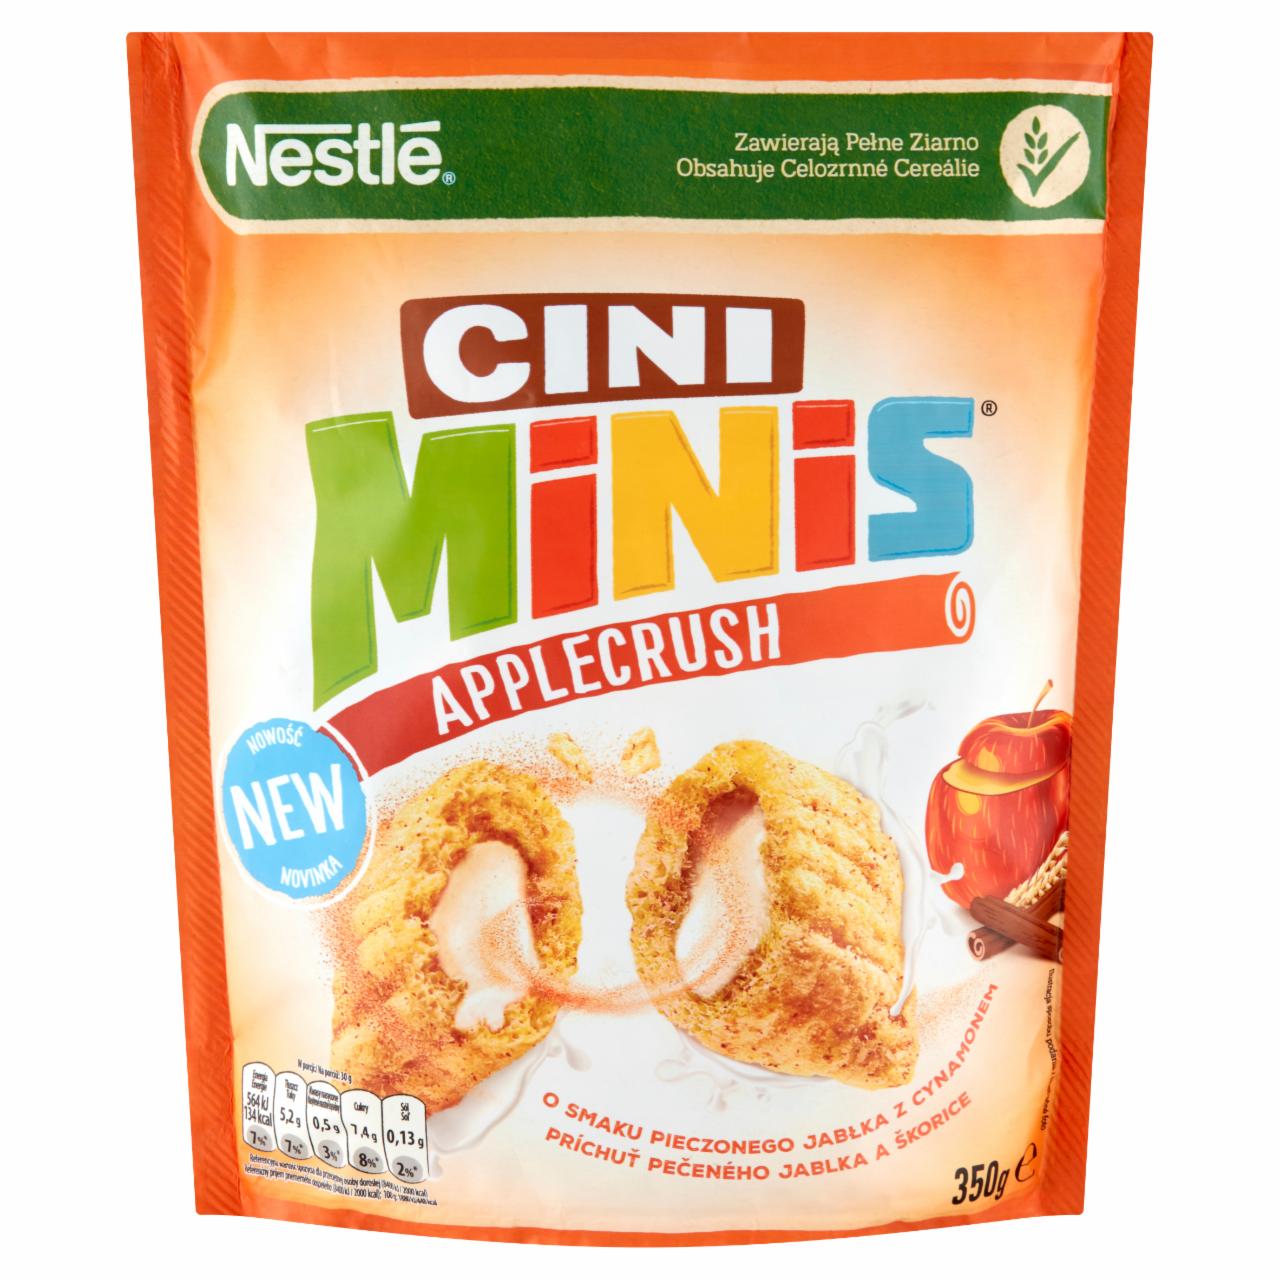 Zdjęcia - Nestlé Cini Minis AppleCrush Płatki śniadaniowe